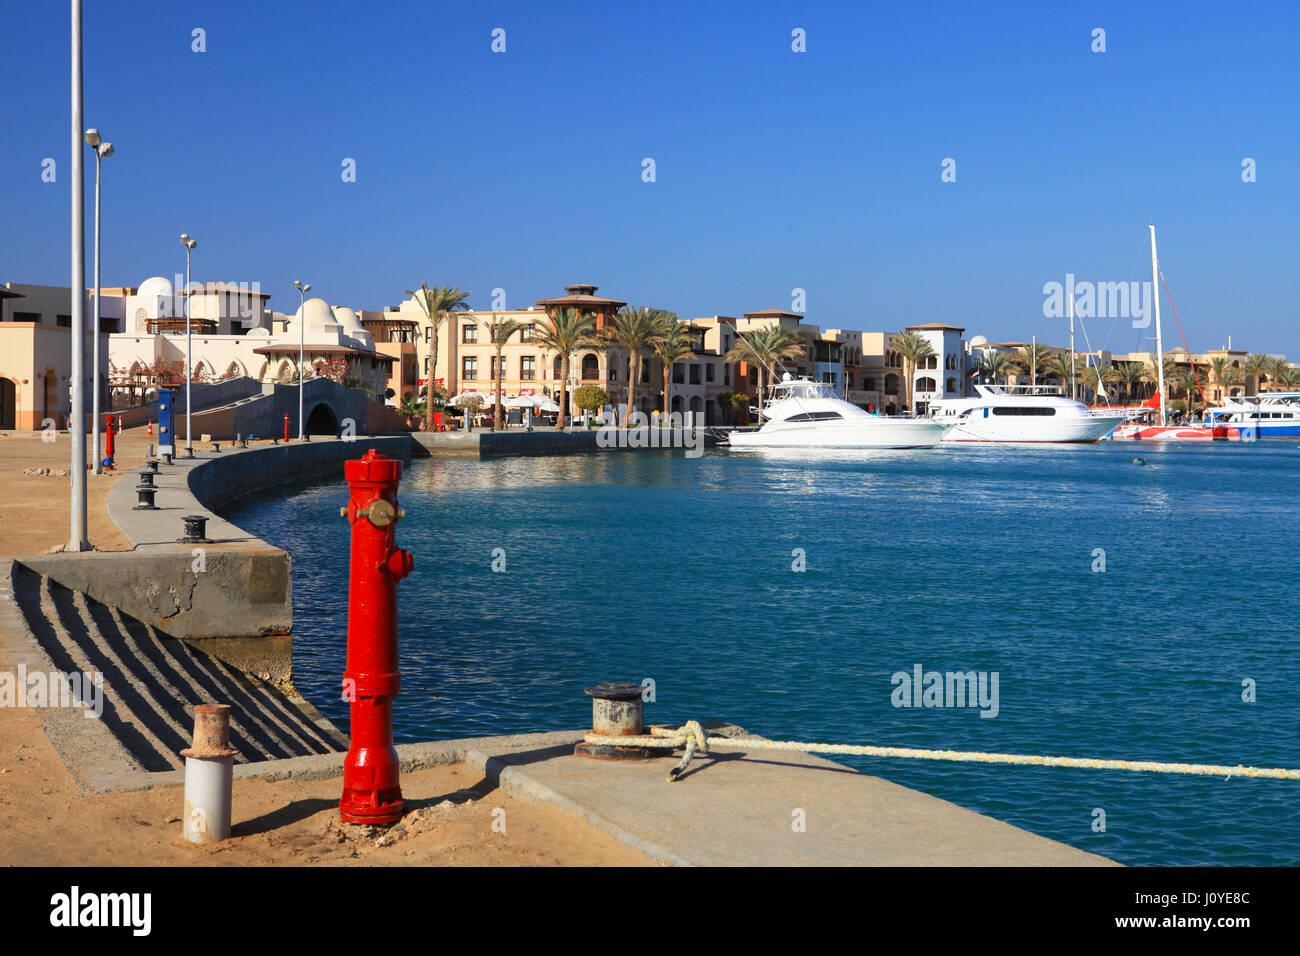 PORT GHALIB, Egitto - 02 Aprile 2017: Port Ghalib, un bellissimo porto e marina e città turistica vicino a Marsa Alam, Egitto Foto Stock